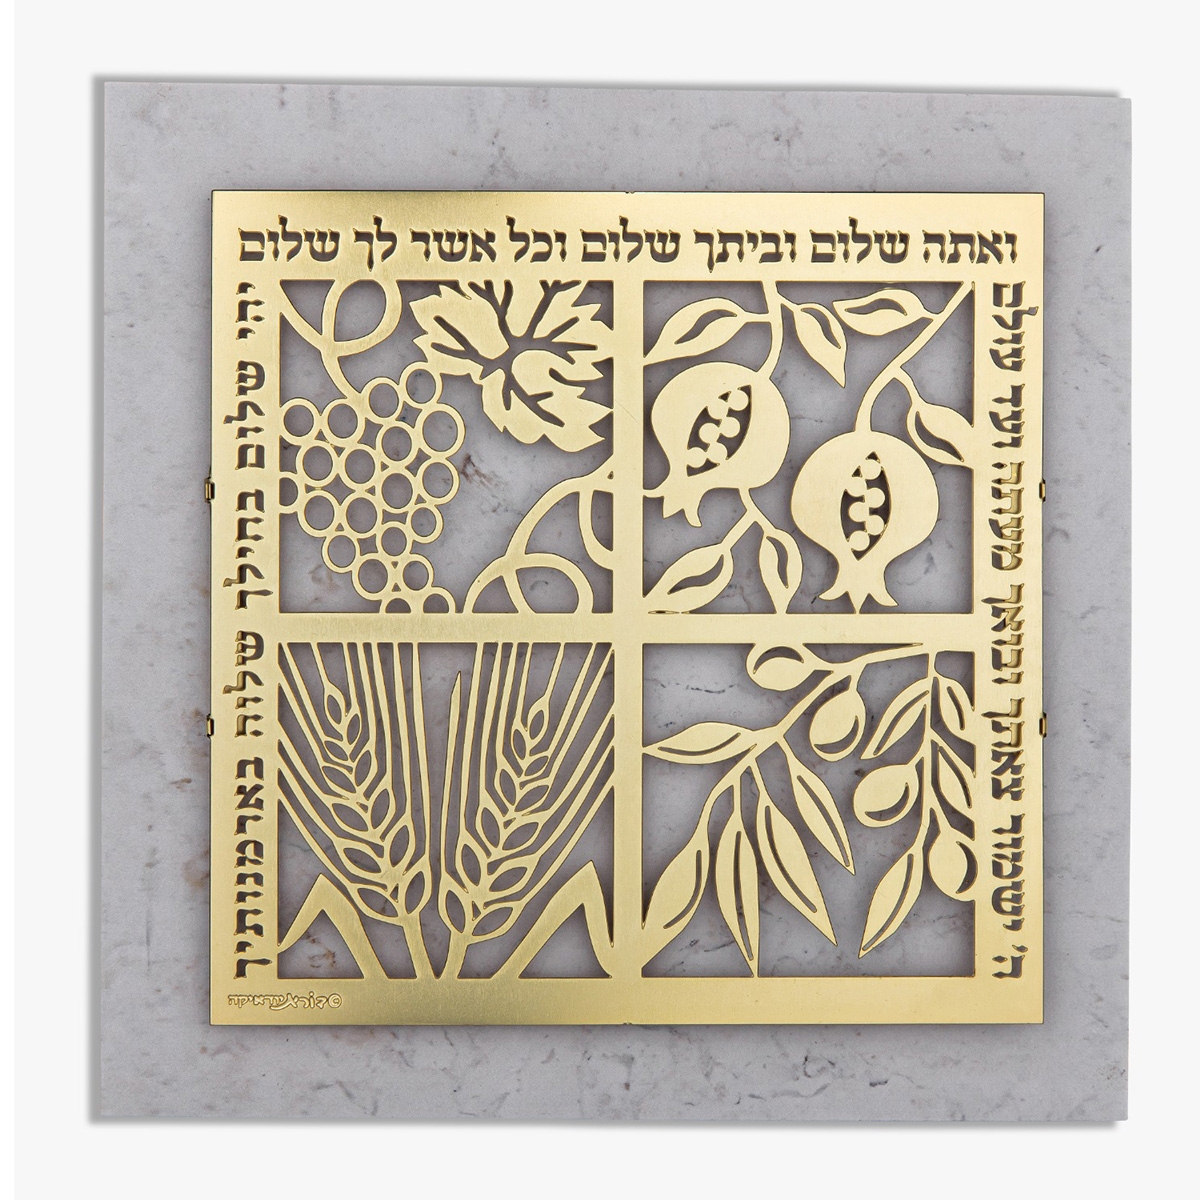 Olive Wood Desk Ornament – Ten Commandments (Hebrew/English), Home